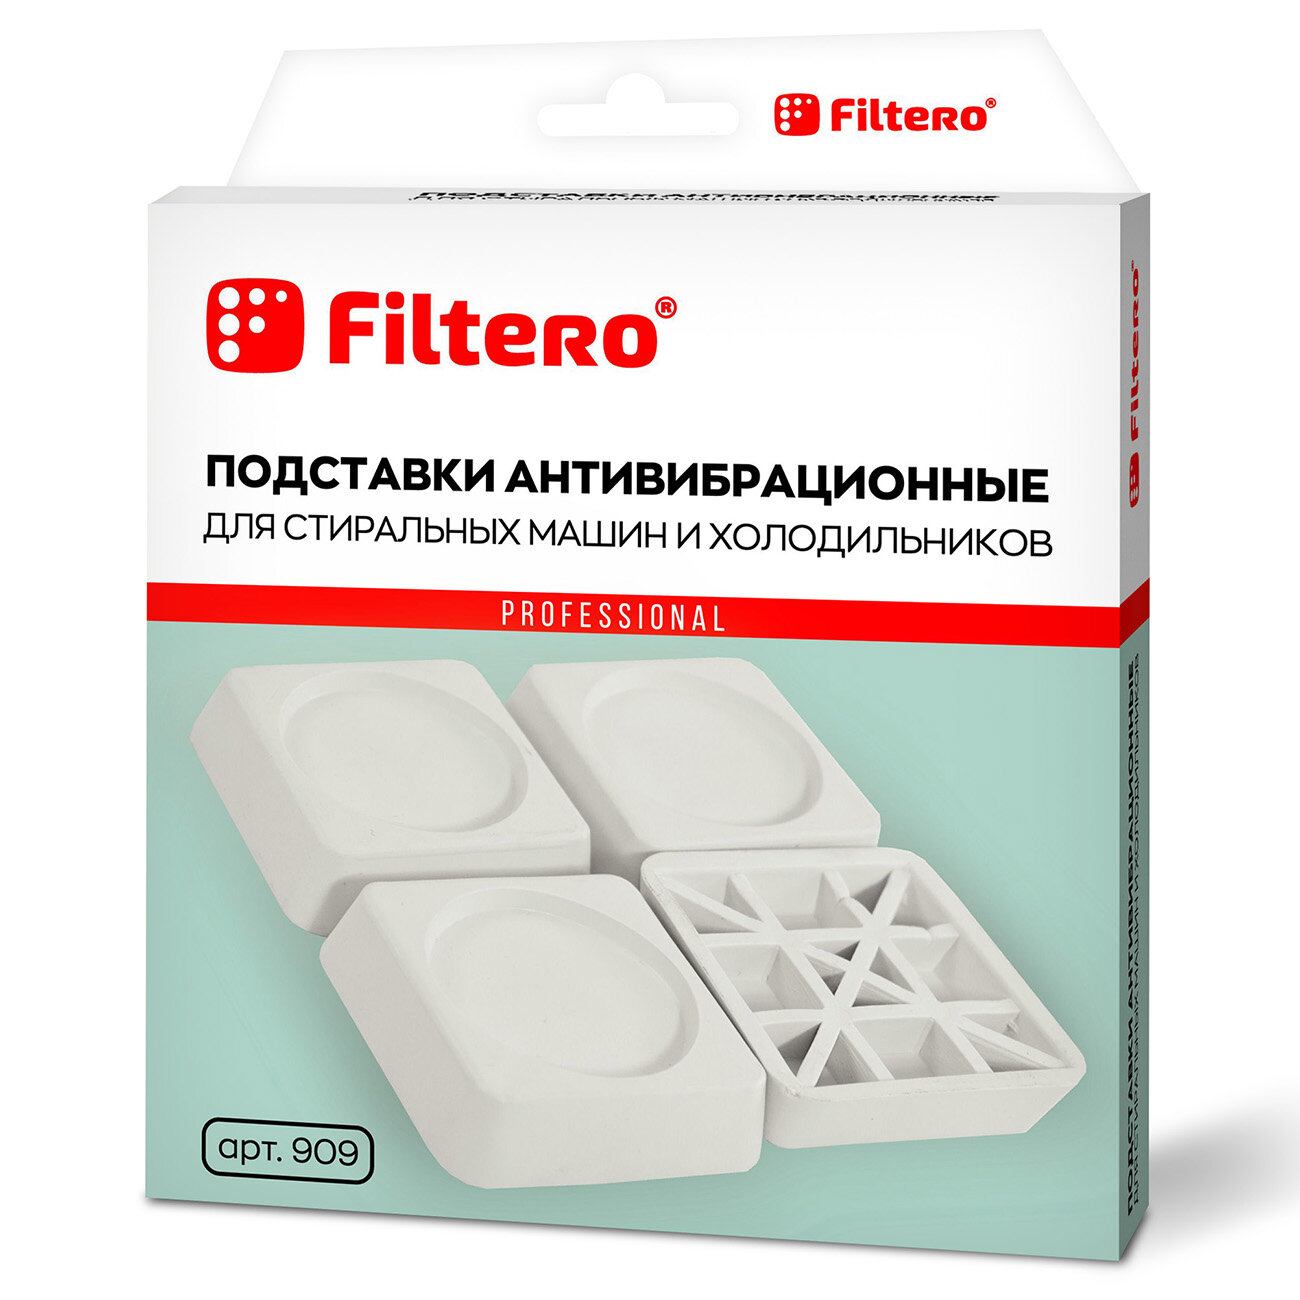 Антивибрационная подставка Filtero - фото №2